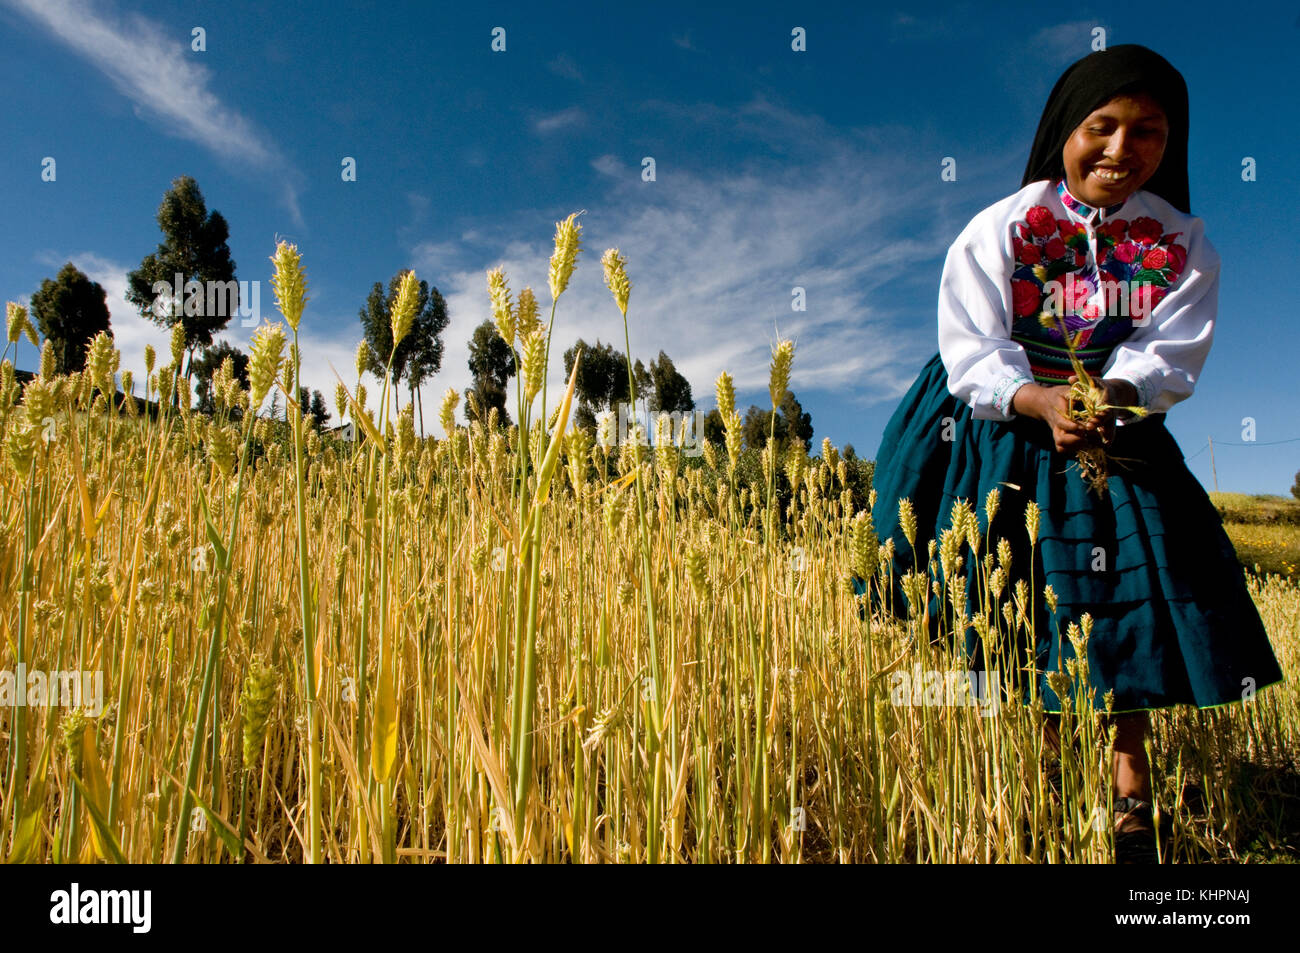 Une femme de l'île d'Amantaní vêtue de son costume régional typique. île amantani, lac Titicaca, Puno, Pérou Banque D'Images